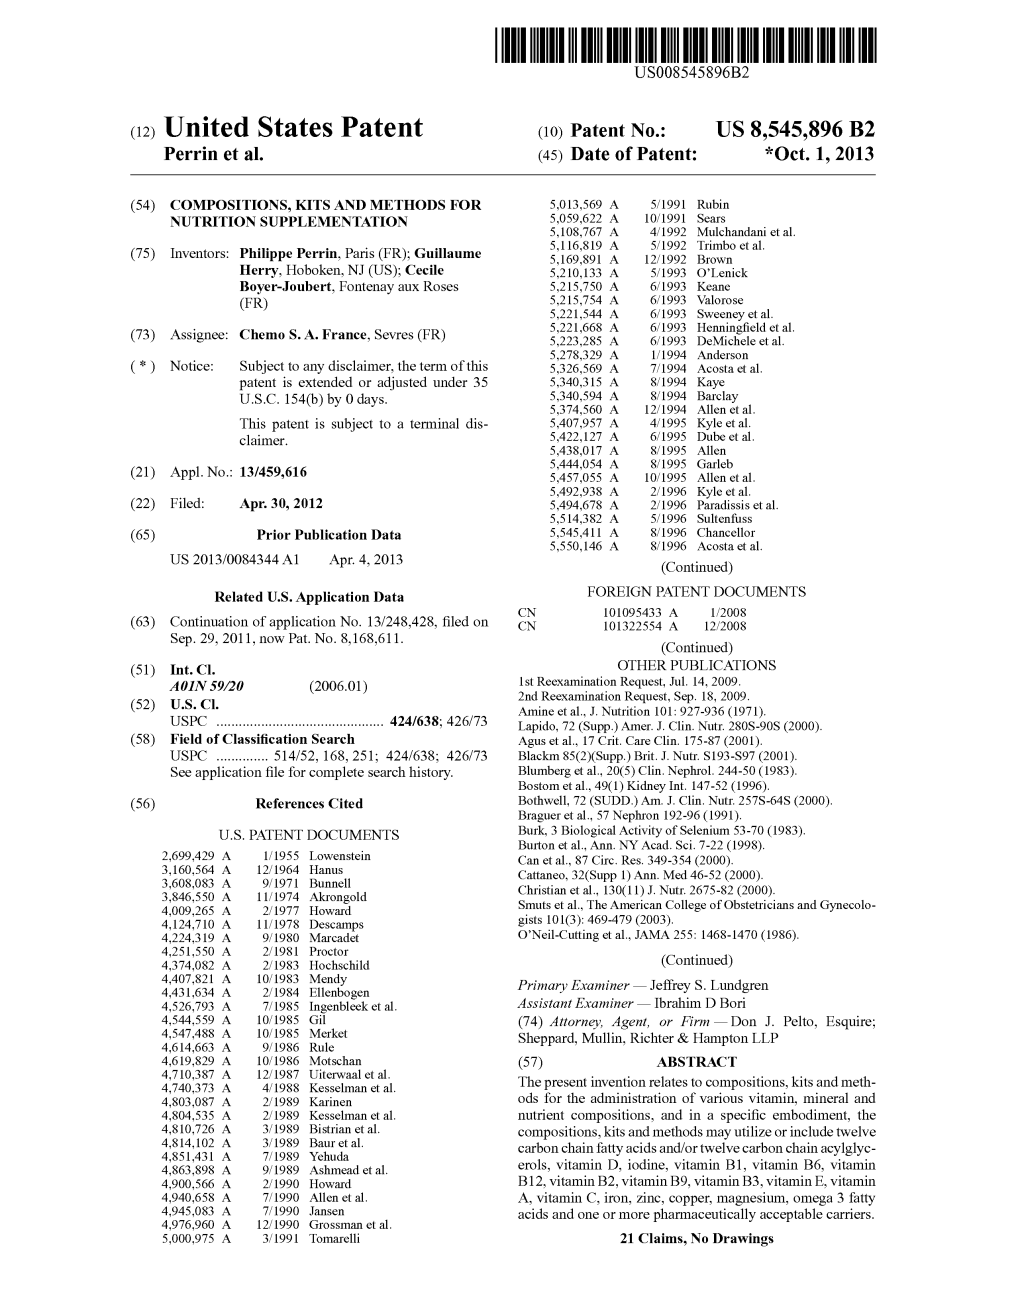 (12) United States Patent (10) Patent No.: US 8,545,896 B2 Perrin Et Al